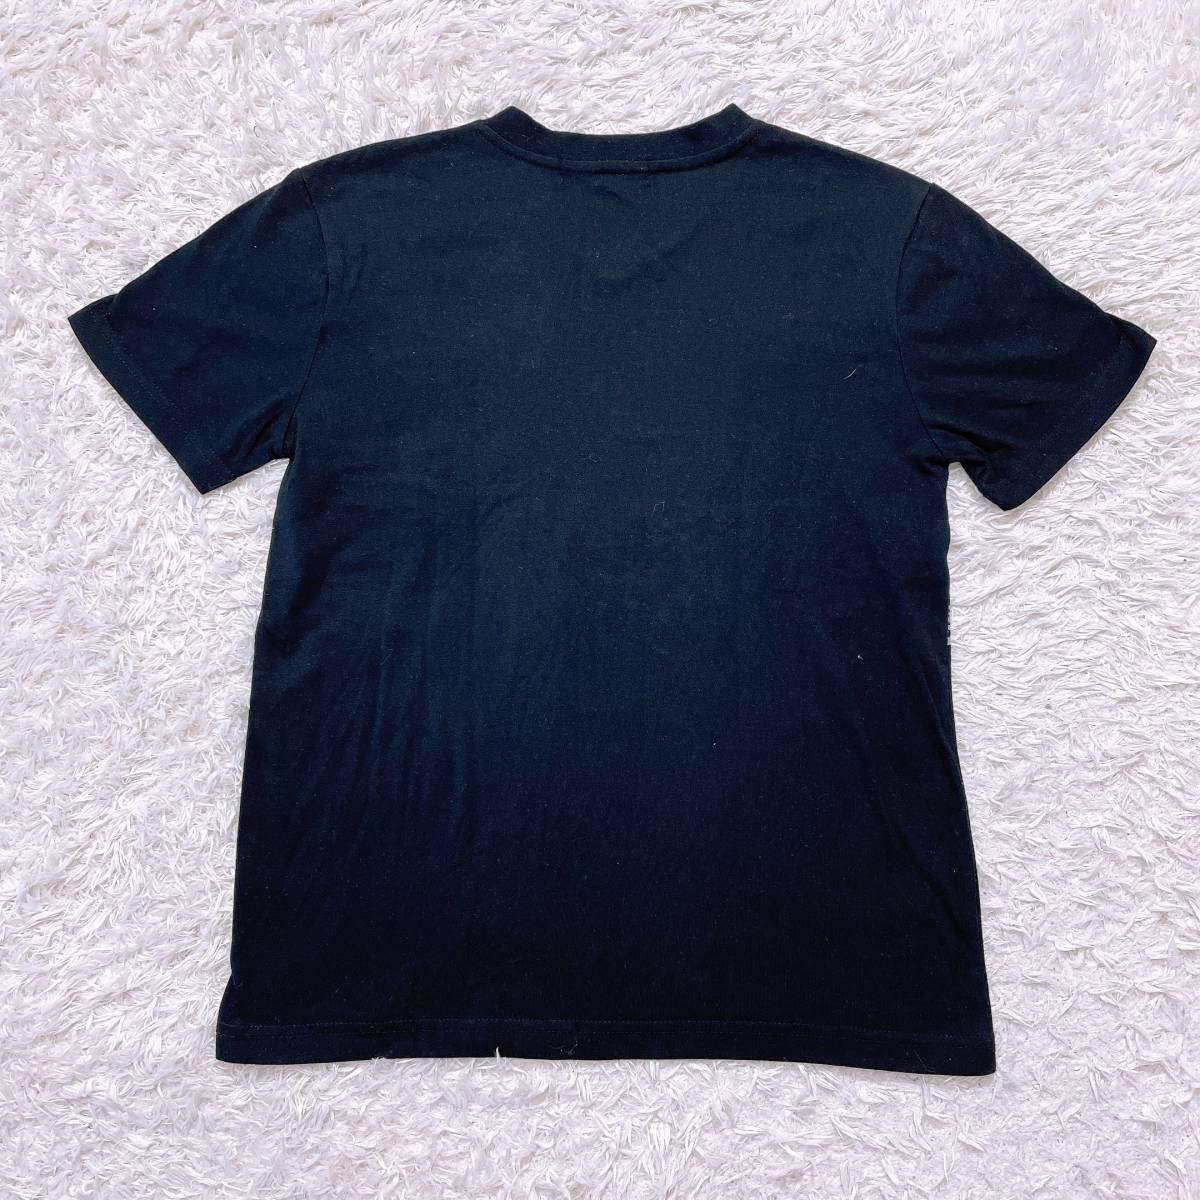 【20994】 PLAYBOY プレイボーイ シャツ ブラック 黒 M Tシャツ 半袖 メンズ 男性用 ロゴマーク うさぎ ポップ かわいい